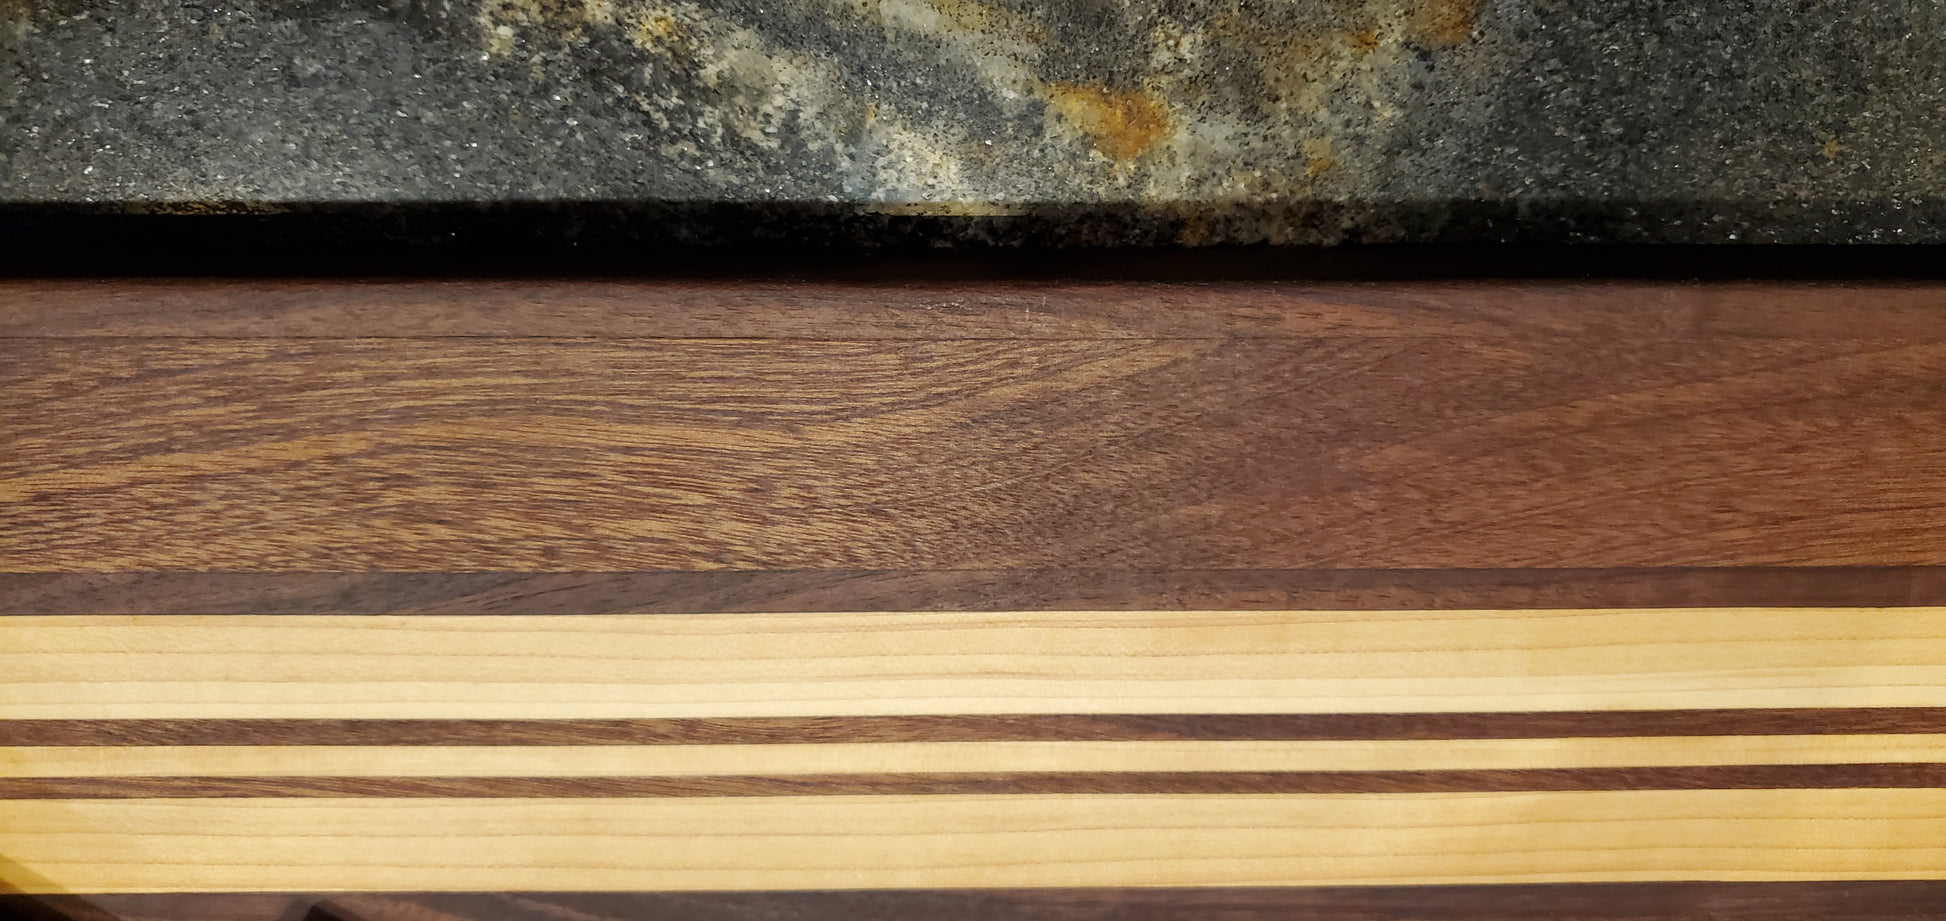 Jarhead Wood Wax - Cutting Board Finishing Wax – Hodgdon Wood Designs LLC